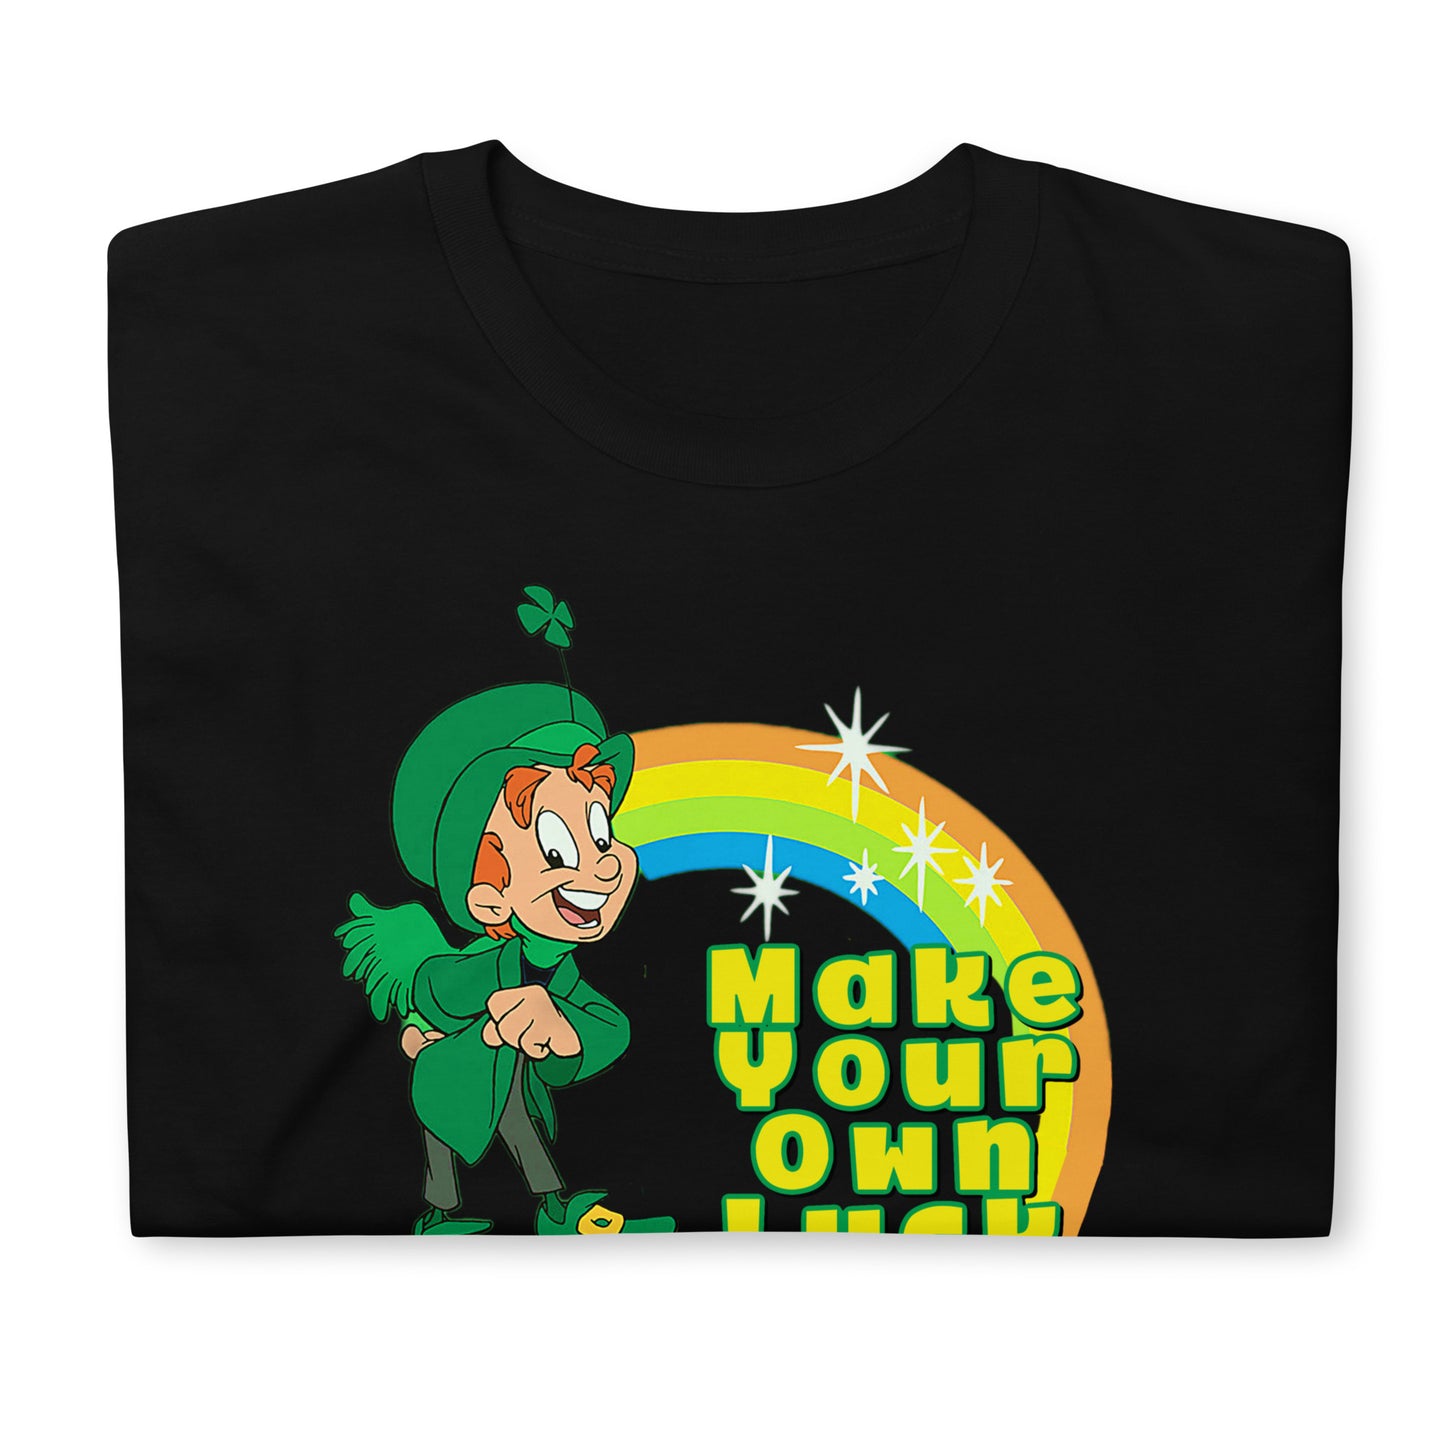 Make Your Own Luck Mass Cast T-Shirt